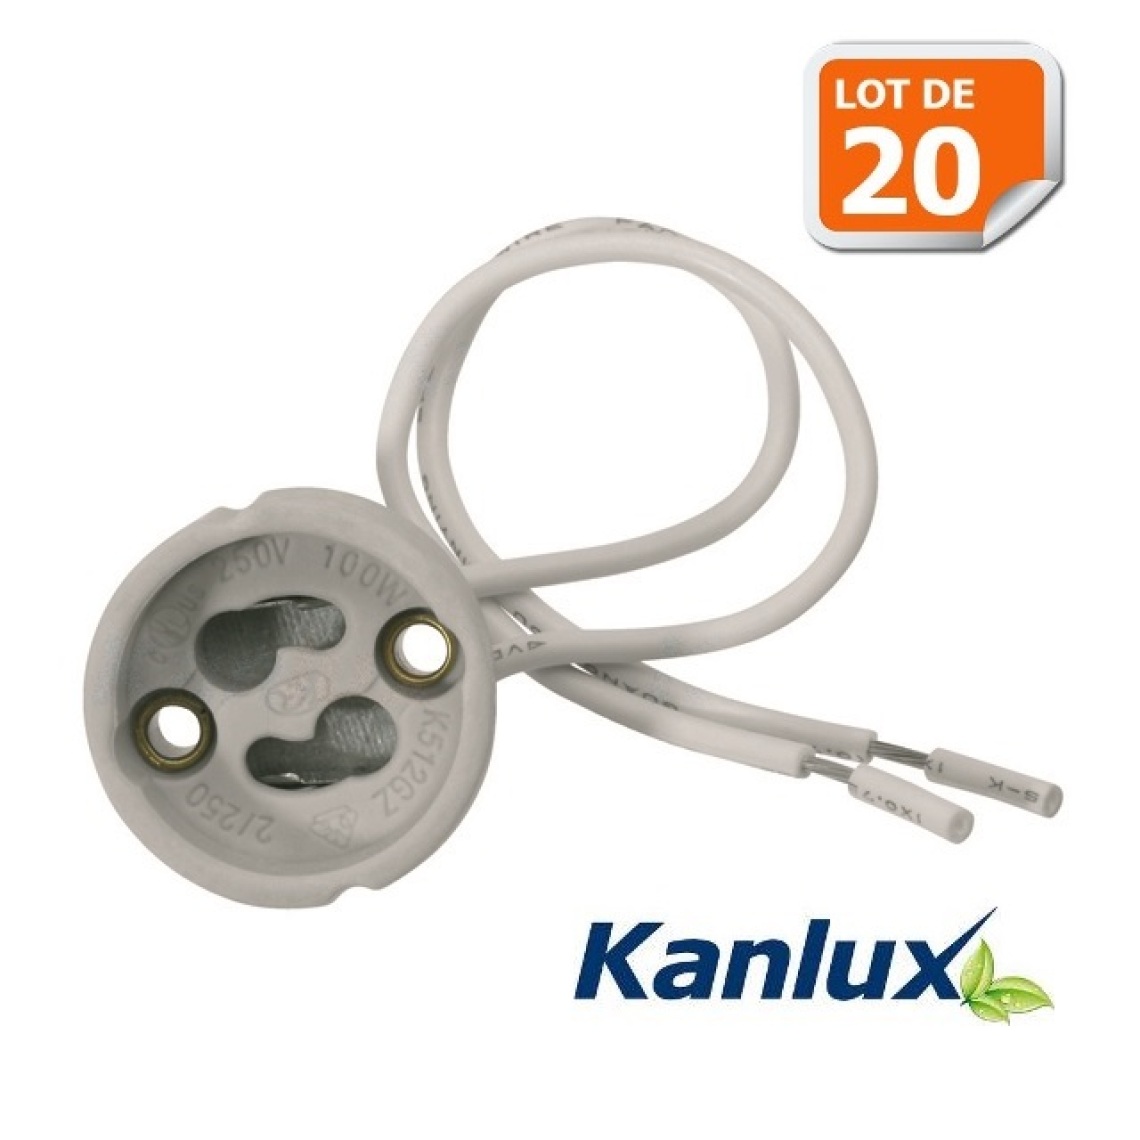 Kanlux - Lot de 20 Douilles Culot GU10 pour Ampoule Halogène ou Led Marque Kanlux ref 402 - Douilles électriques